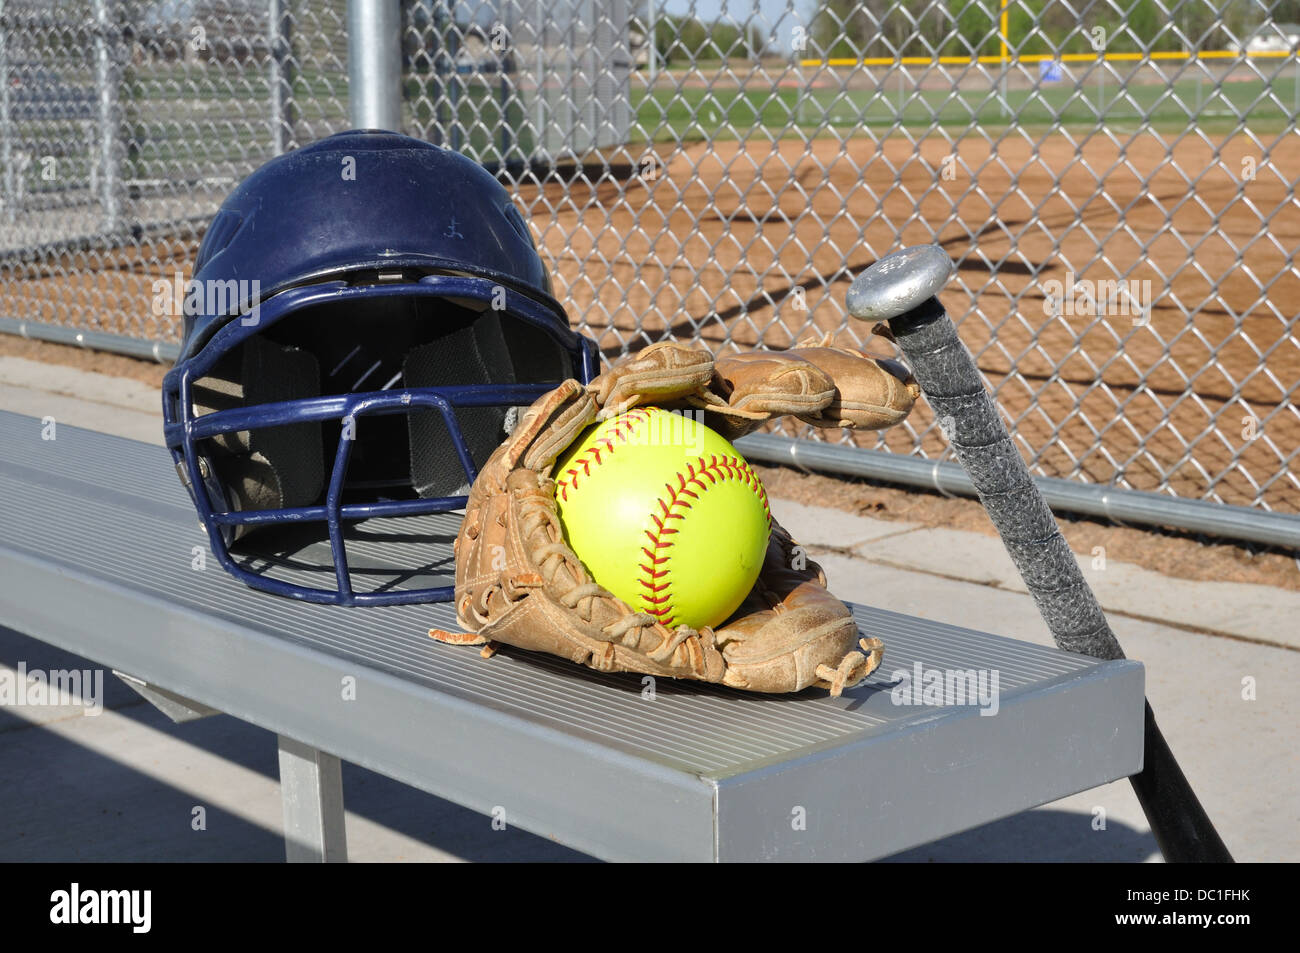 Le softball bat, casque, gant et balle Banque D'Images